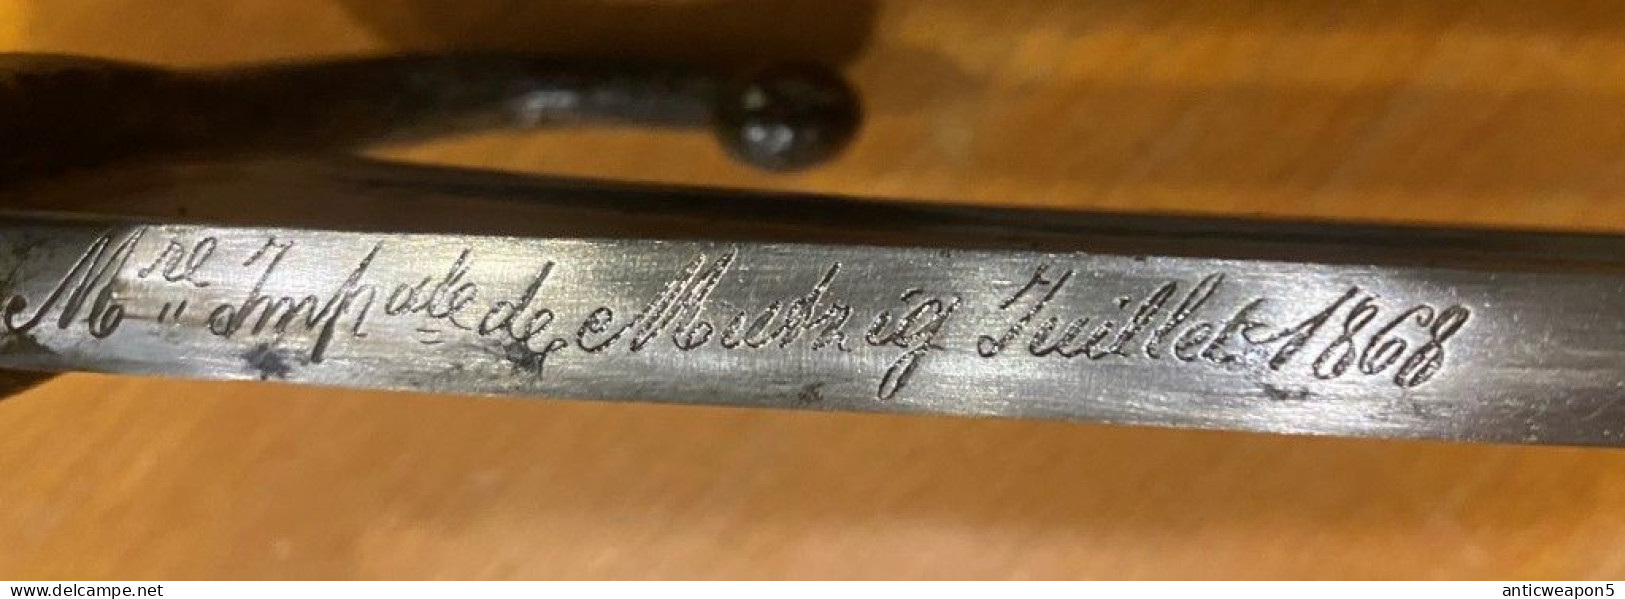 Baïonnette pour fusil Chasspo France. M1866 (735)